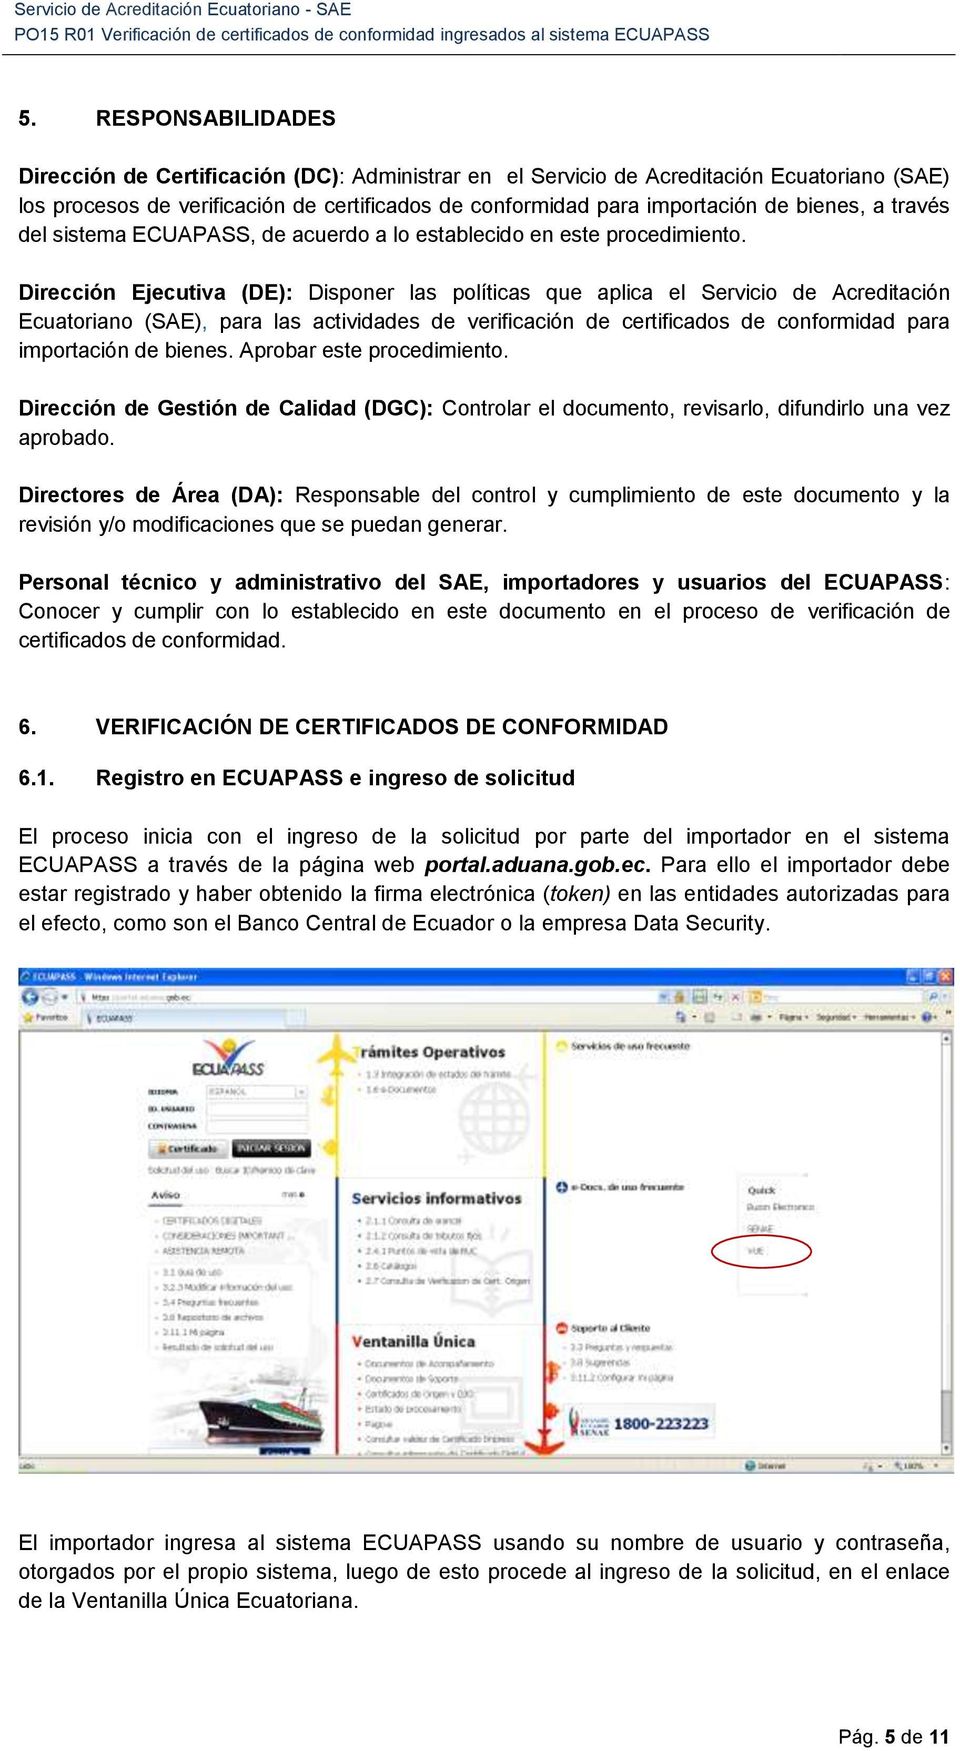 Dirección Ejecutiva (DE): Disponer las políticas que aplica el Servicio de Acreditación Ecuatoriano (SAE), para las actividades de verificación de certificados de conformidad para importación de